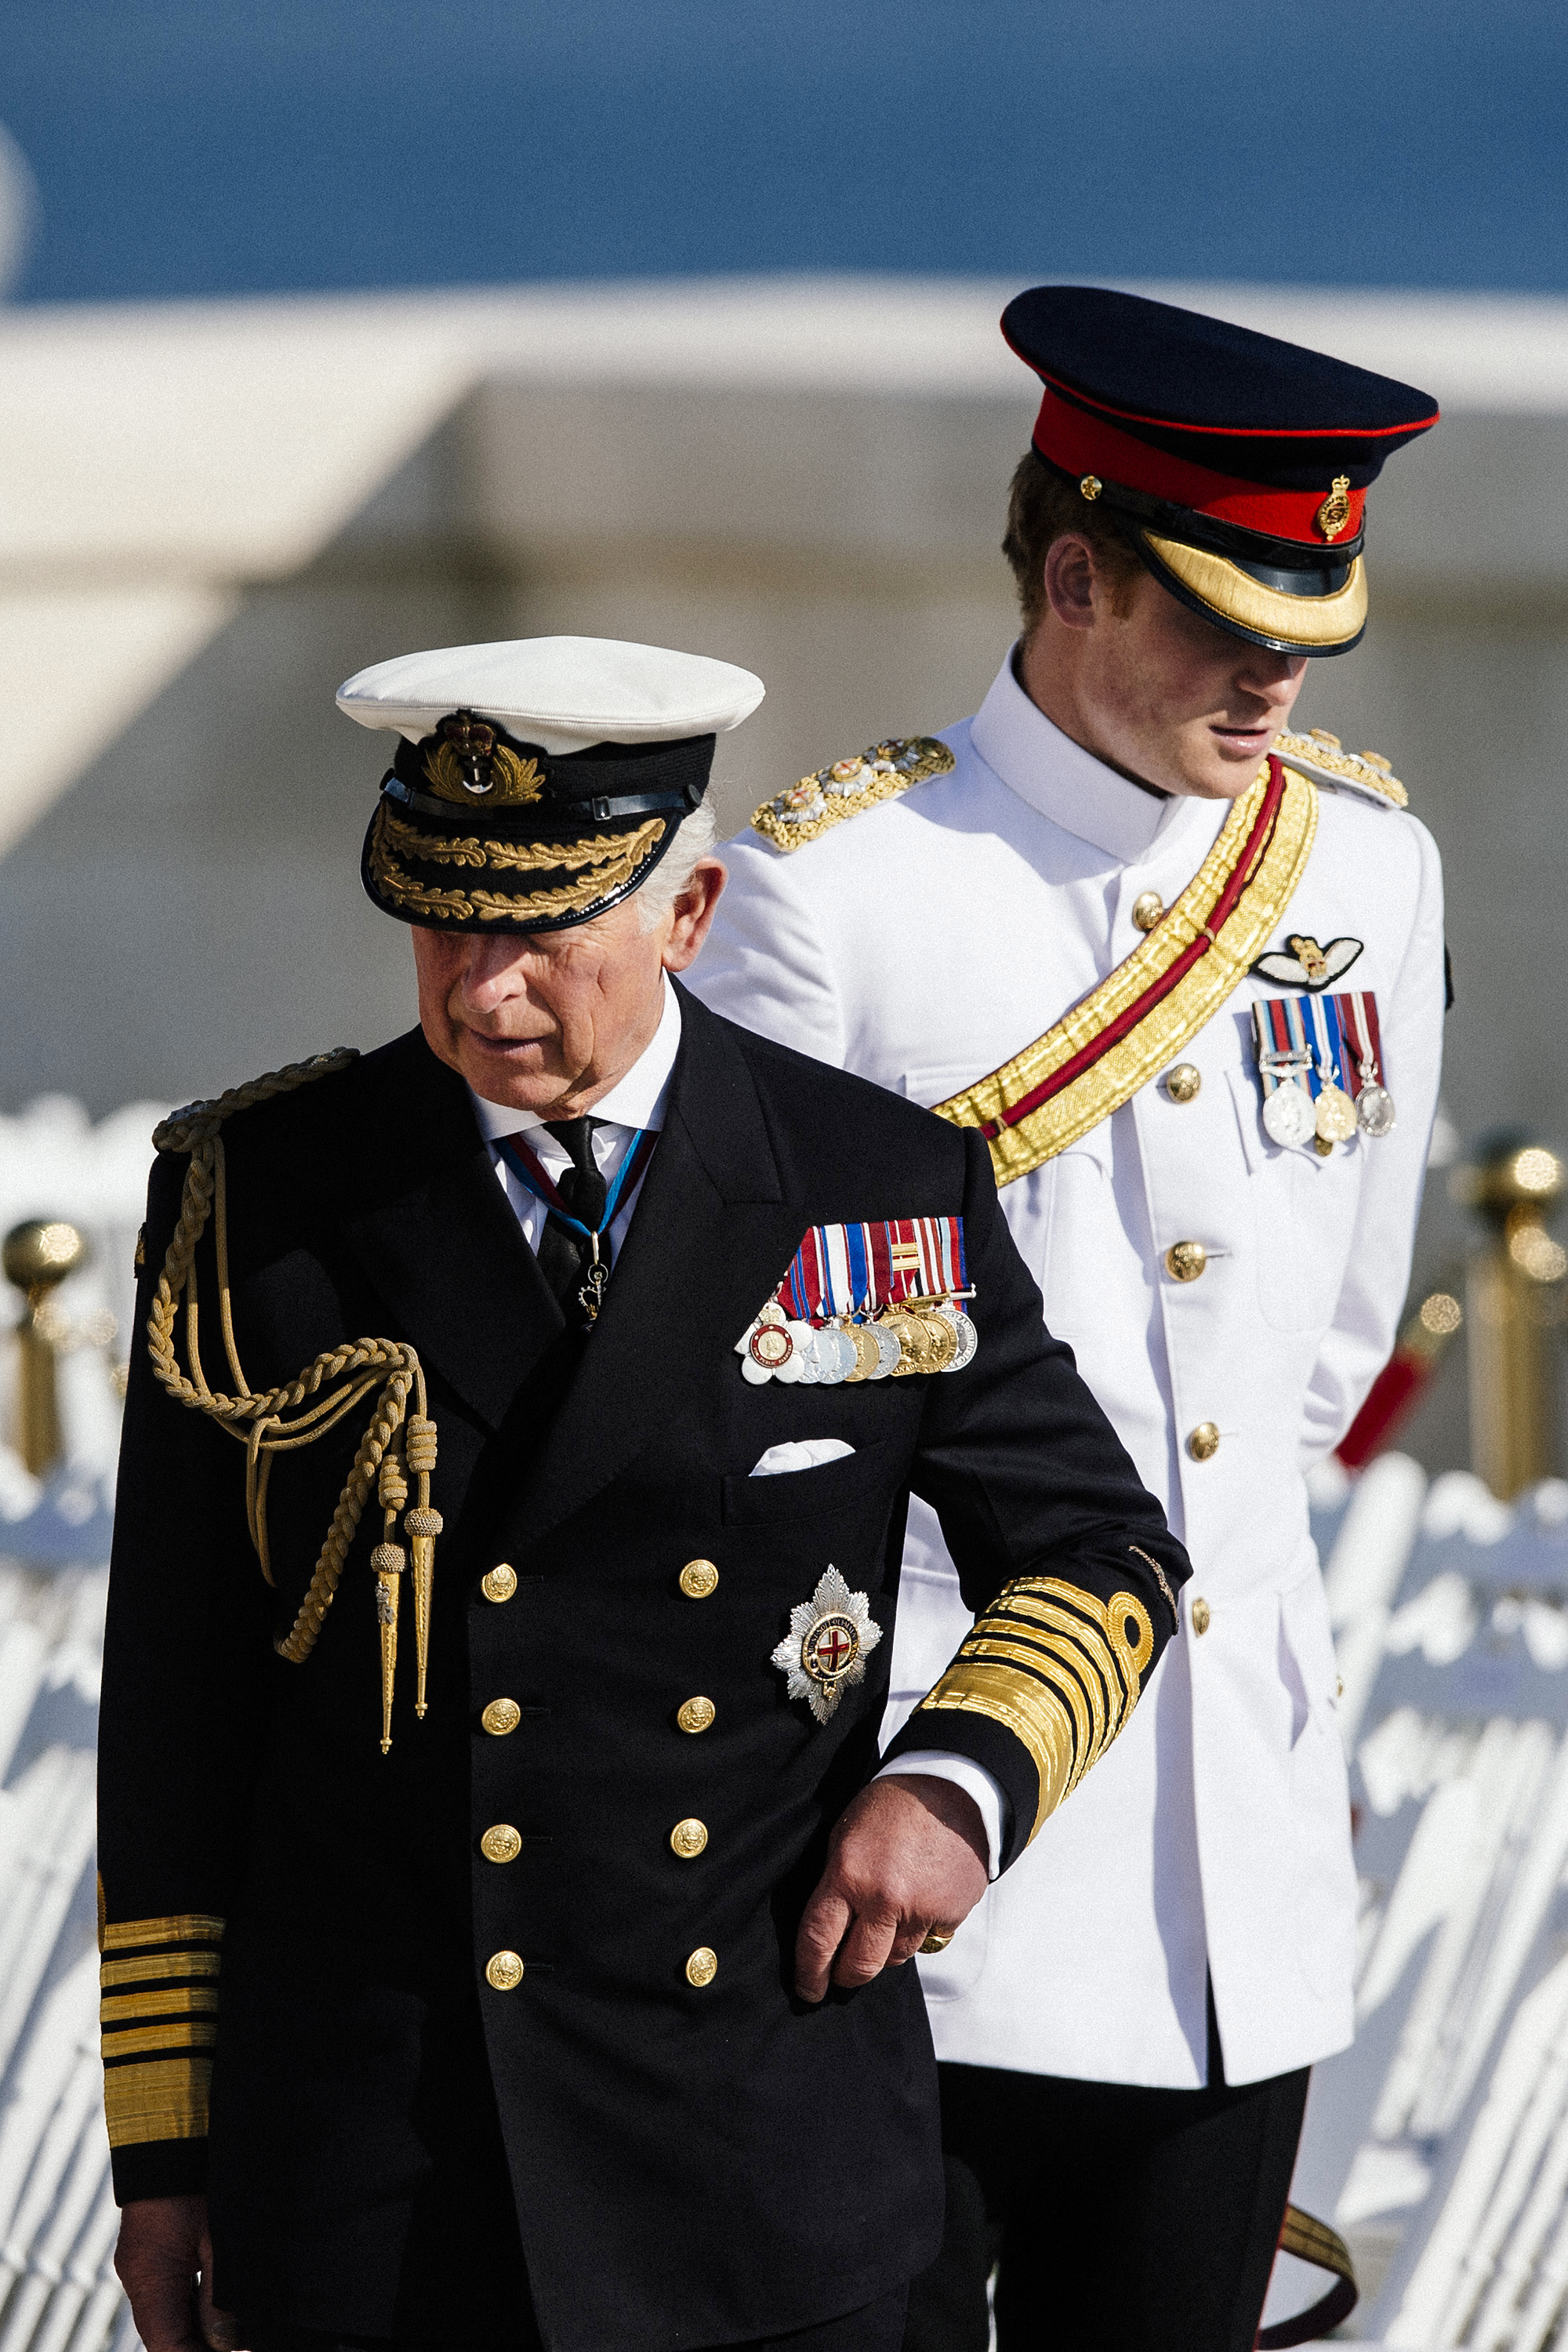 El rey Charles III y el príncipe Harry asisten a un servicio conmemorativo por el centenario del inicio de la Batalla de Galípoli en la península de Galípoli, Turquía, el 24 de abril de 2015 | Fuente: Getty Images